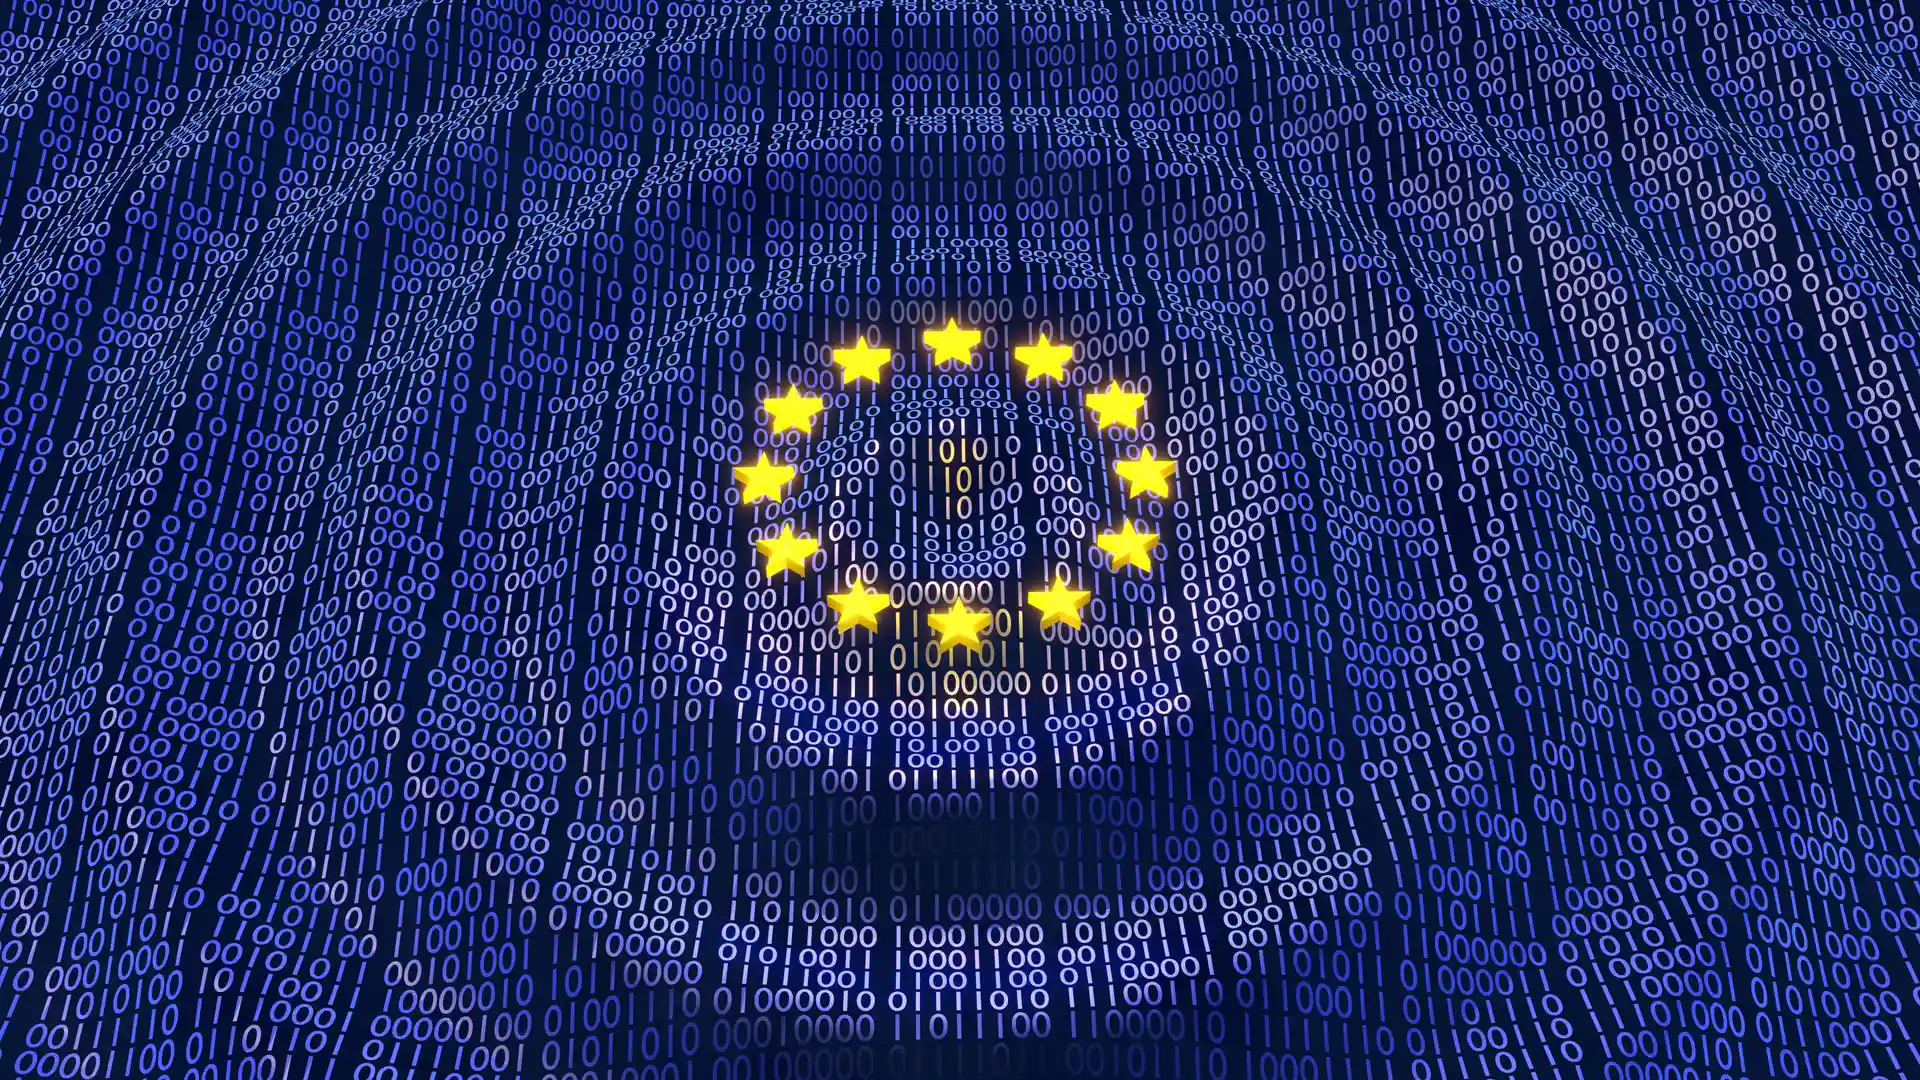 Bandera europea hecha en código que representa el roaming sim card en Europa